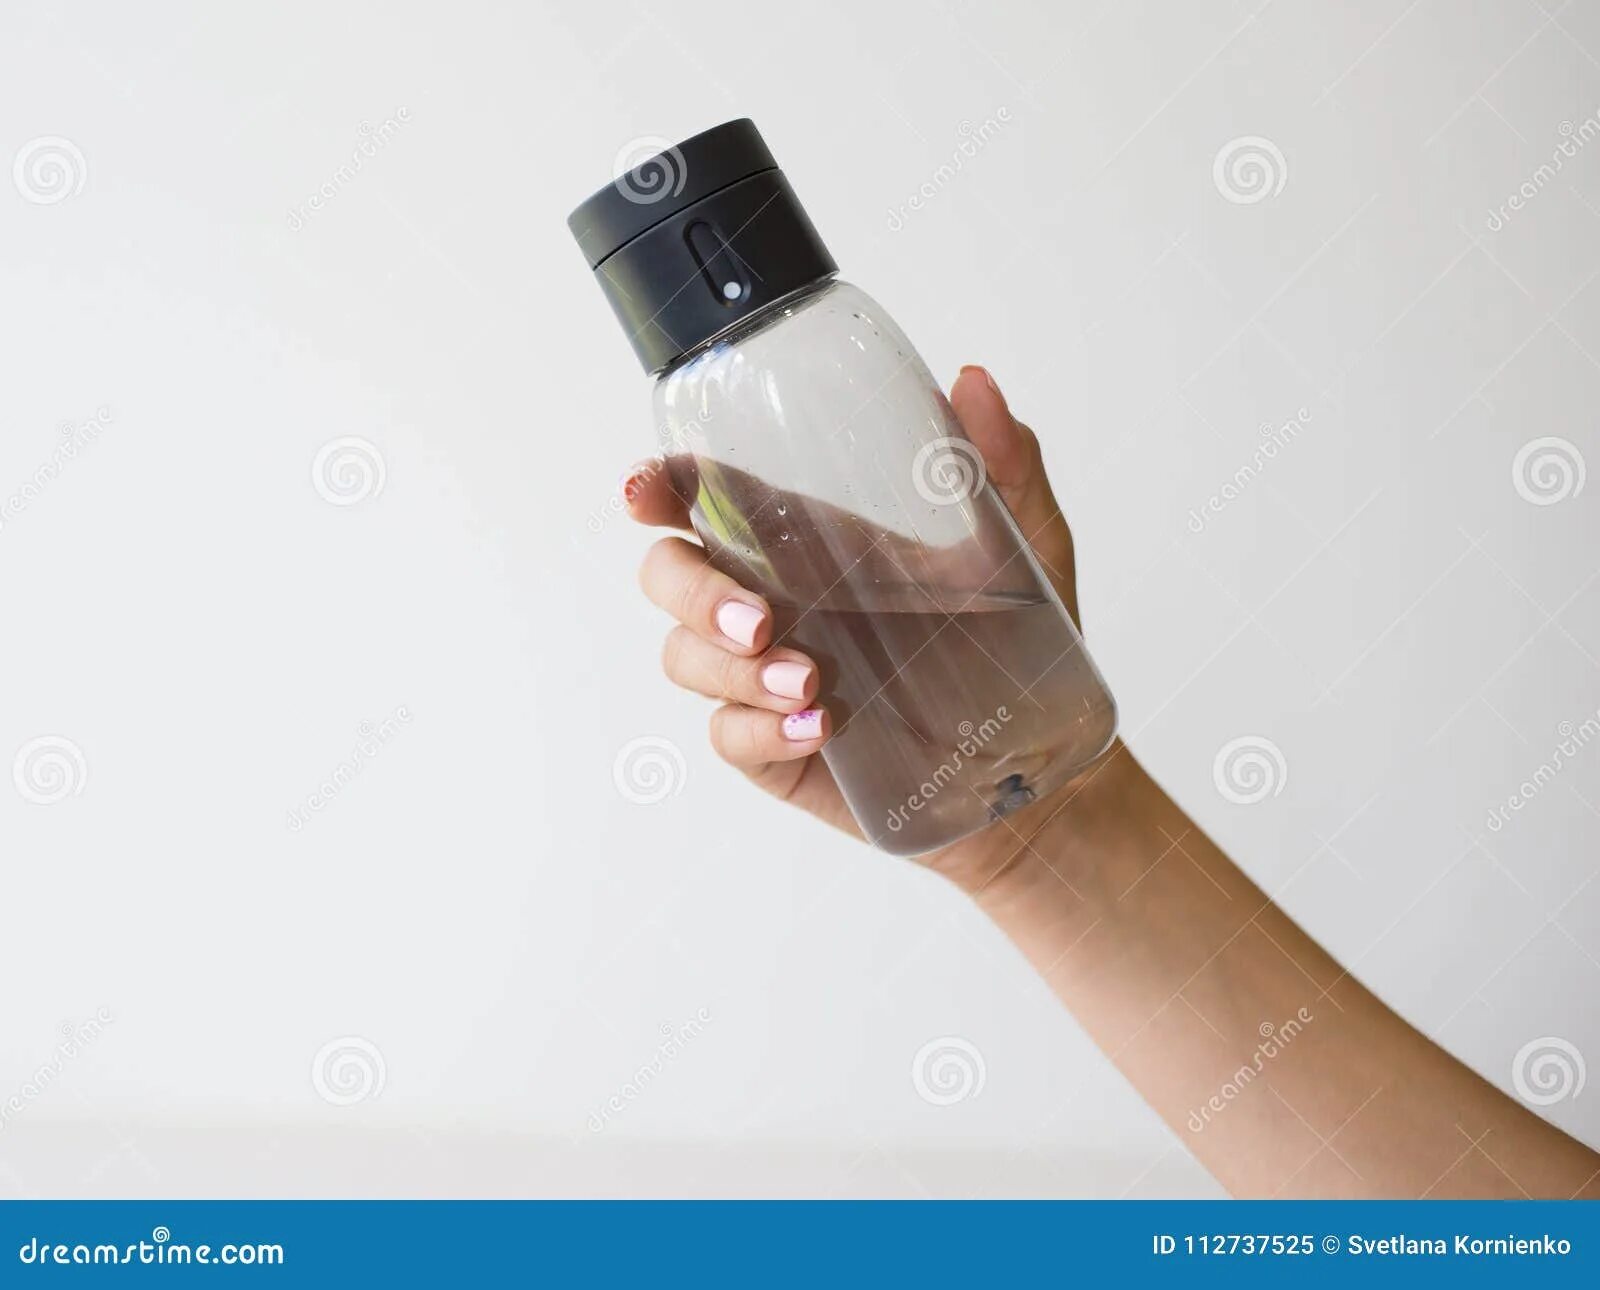 Бутылки пластик руками. Бутылка в руке. Пластиковая бутылка для воды в руках. Бутылка воды в руке